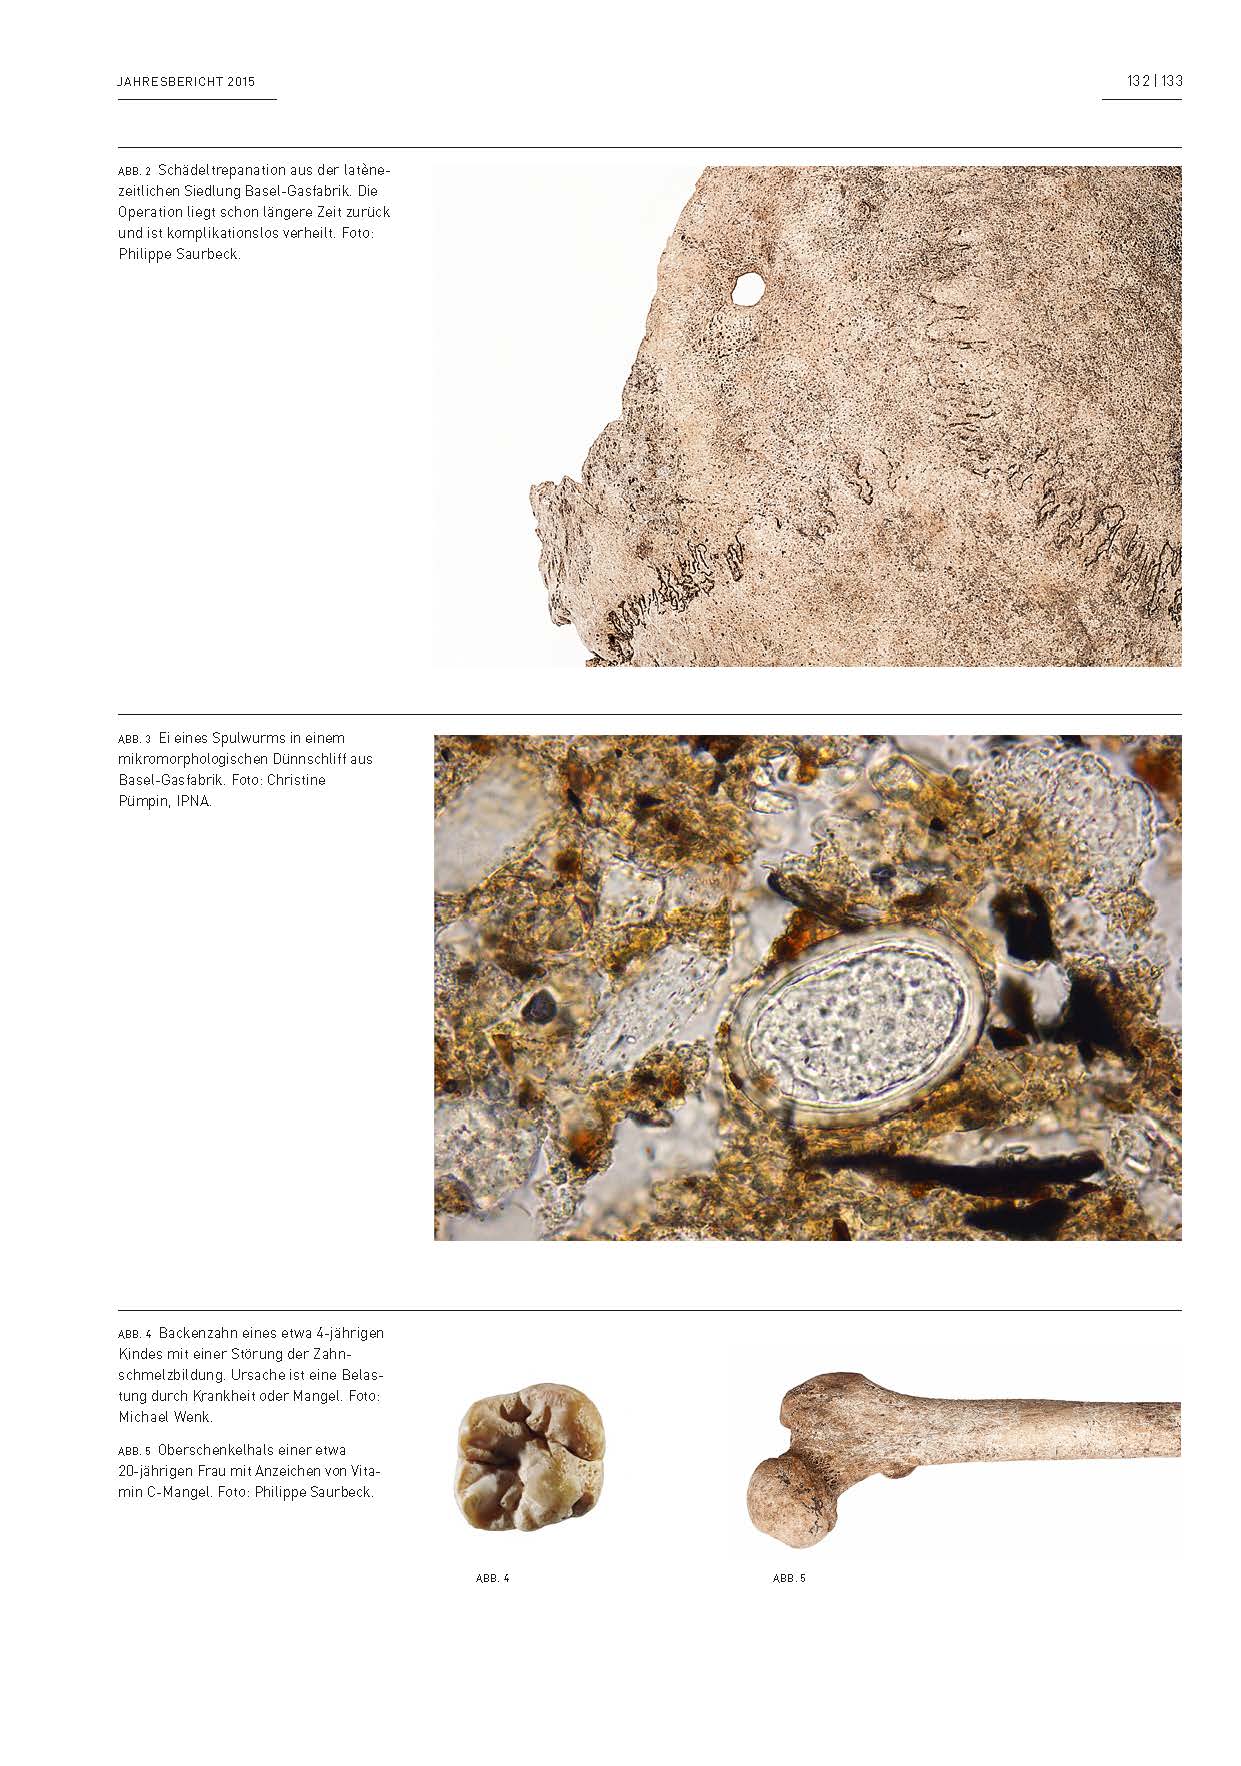 Abbildungen von menschlichen Skelettresten und von einem Ei eines Spulwurms